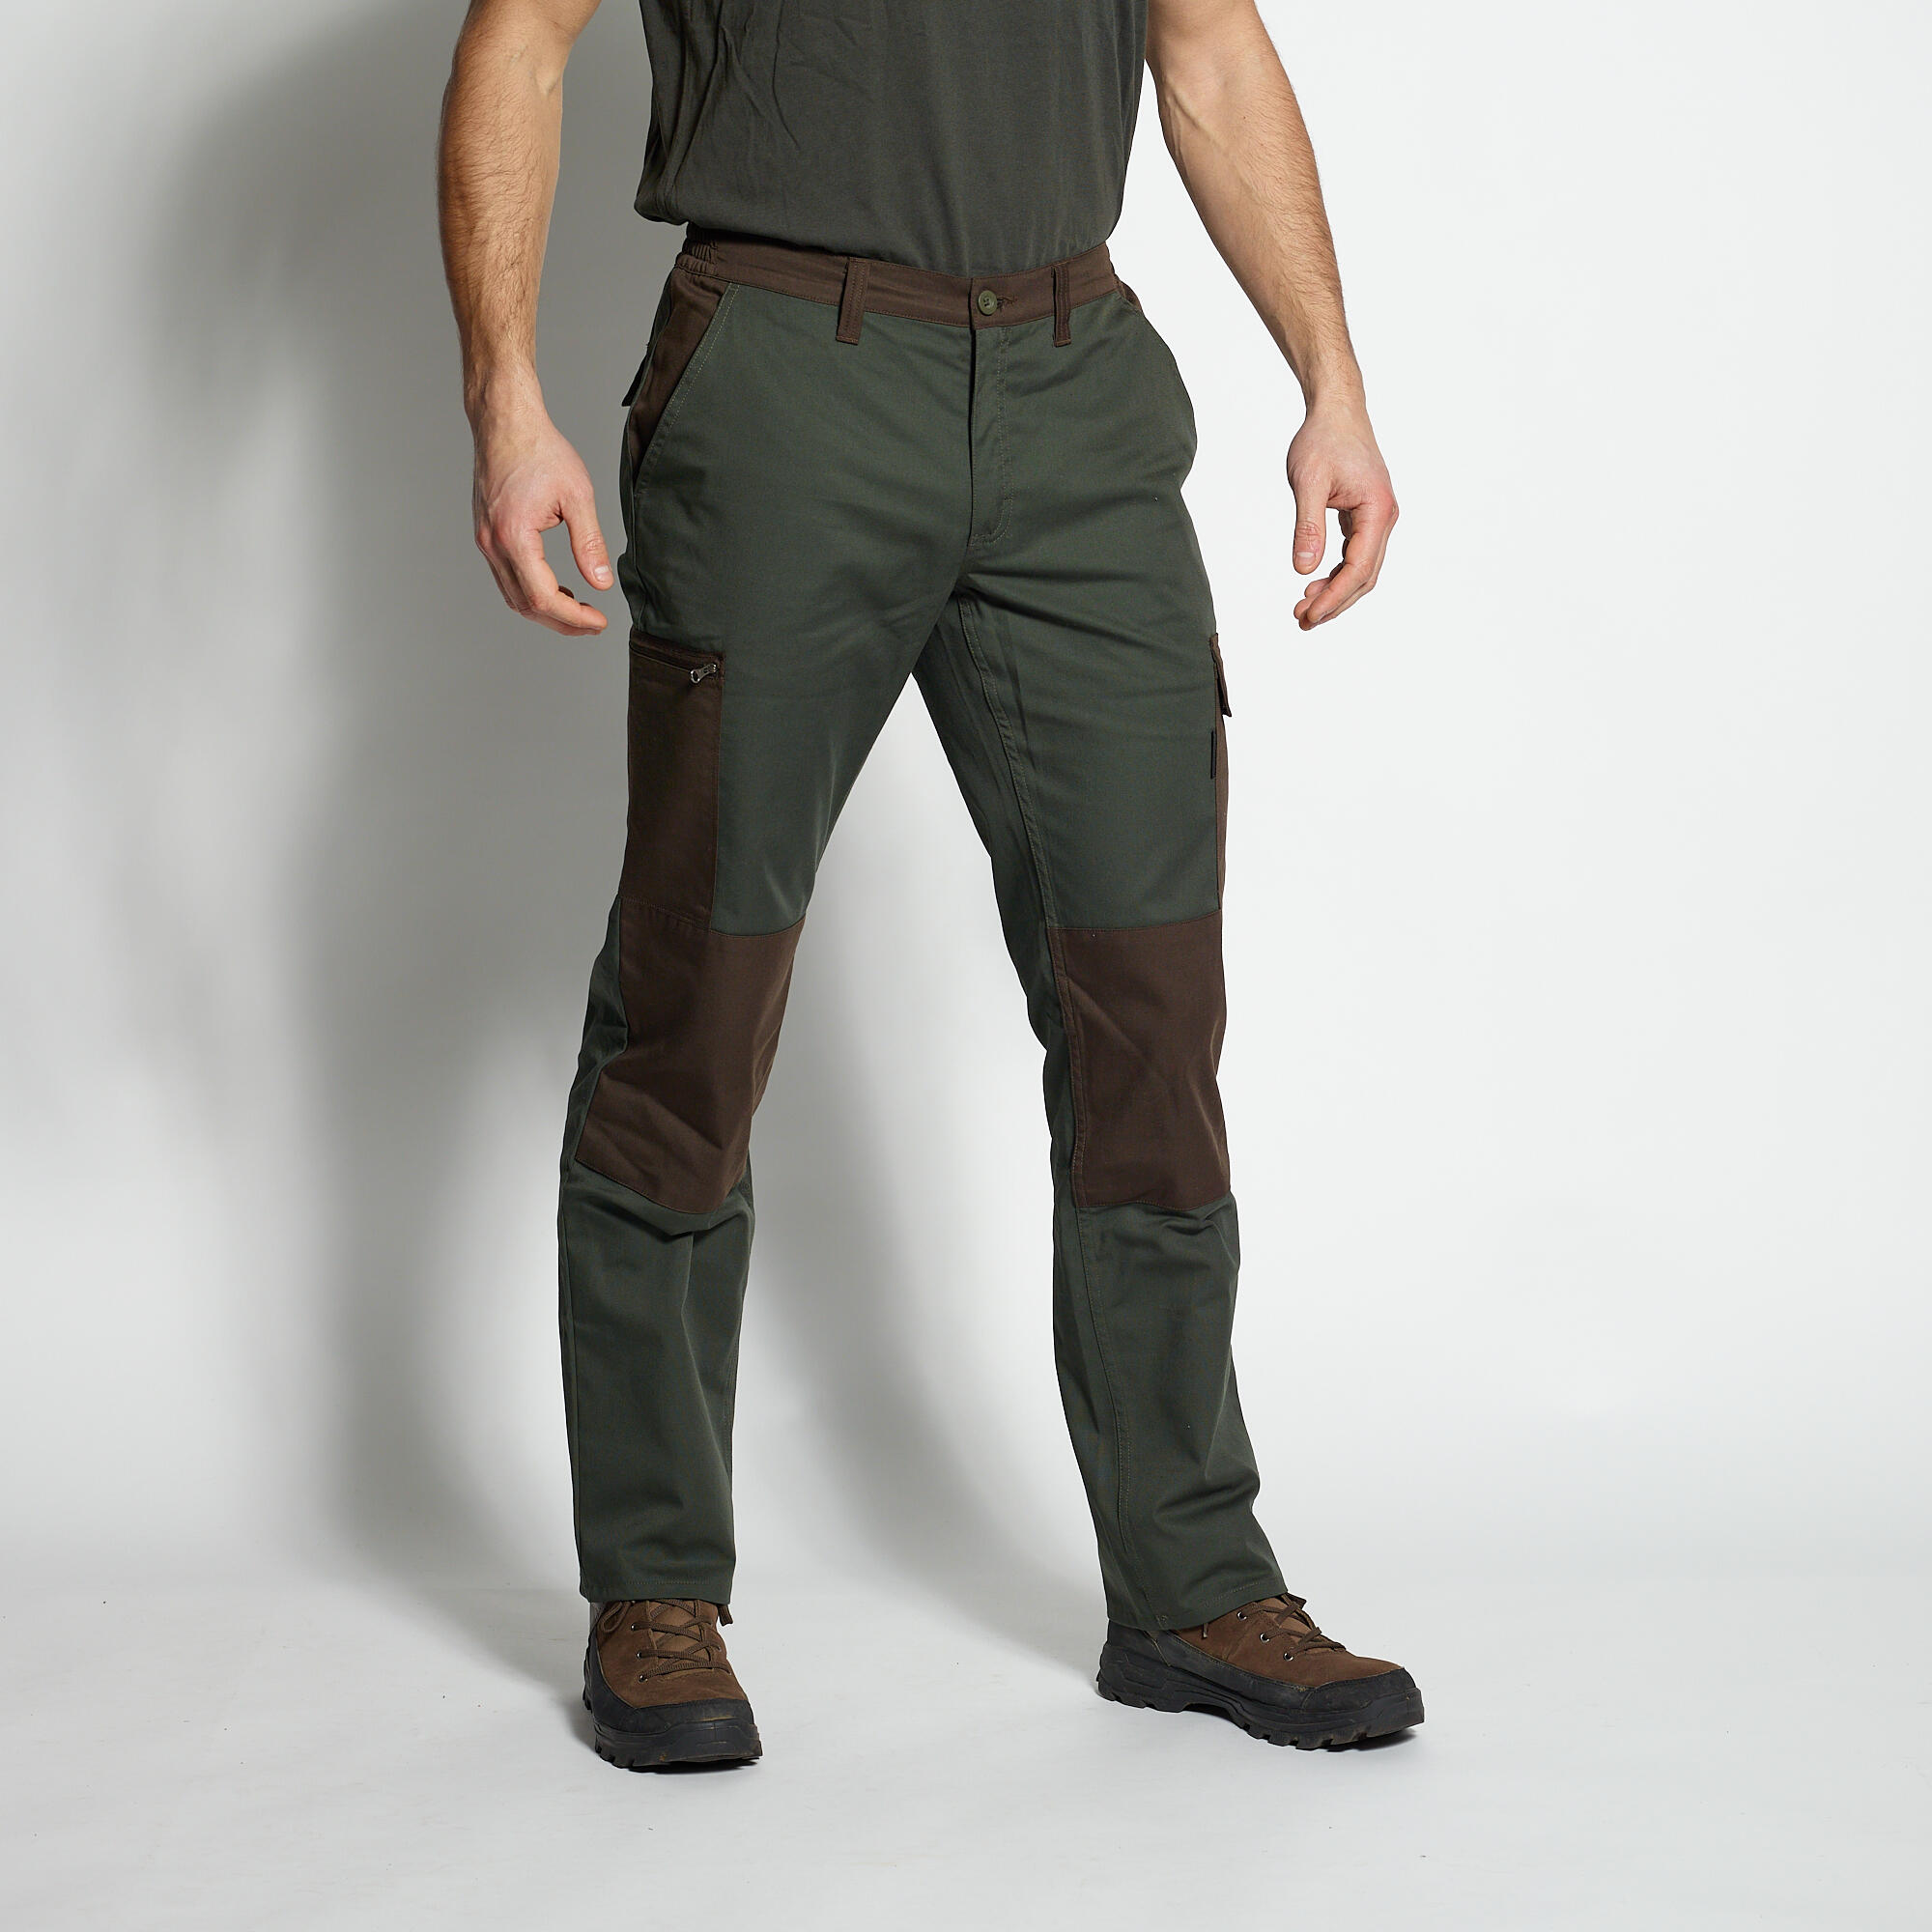 pantalon cargo resistant steppe 300 bicolore vert et marron - solognac